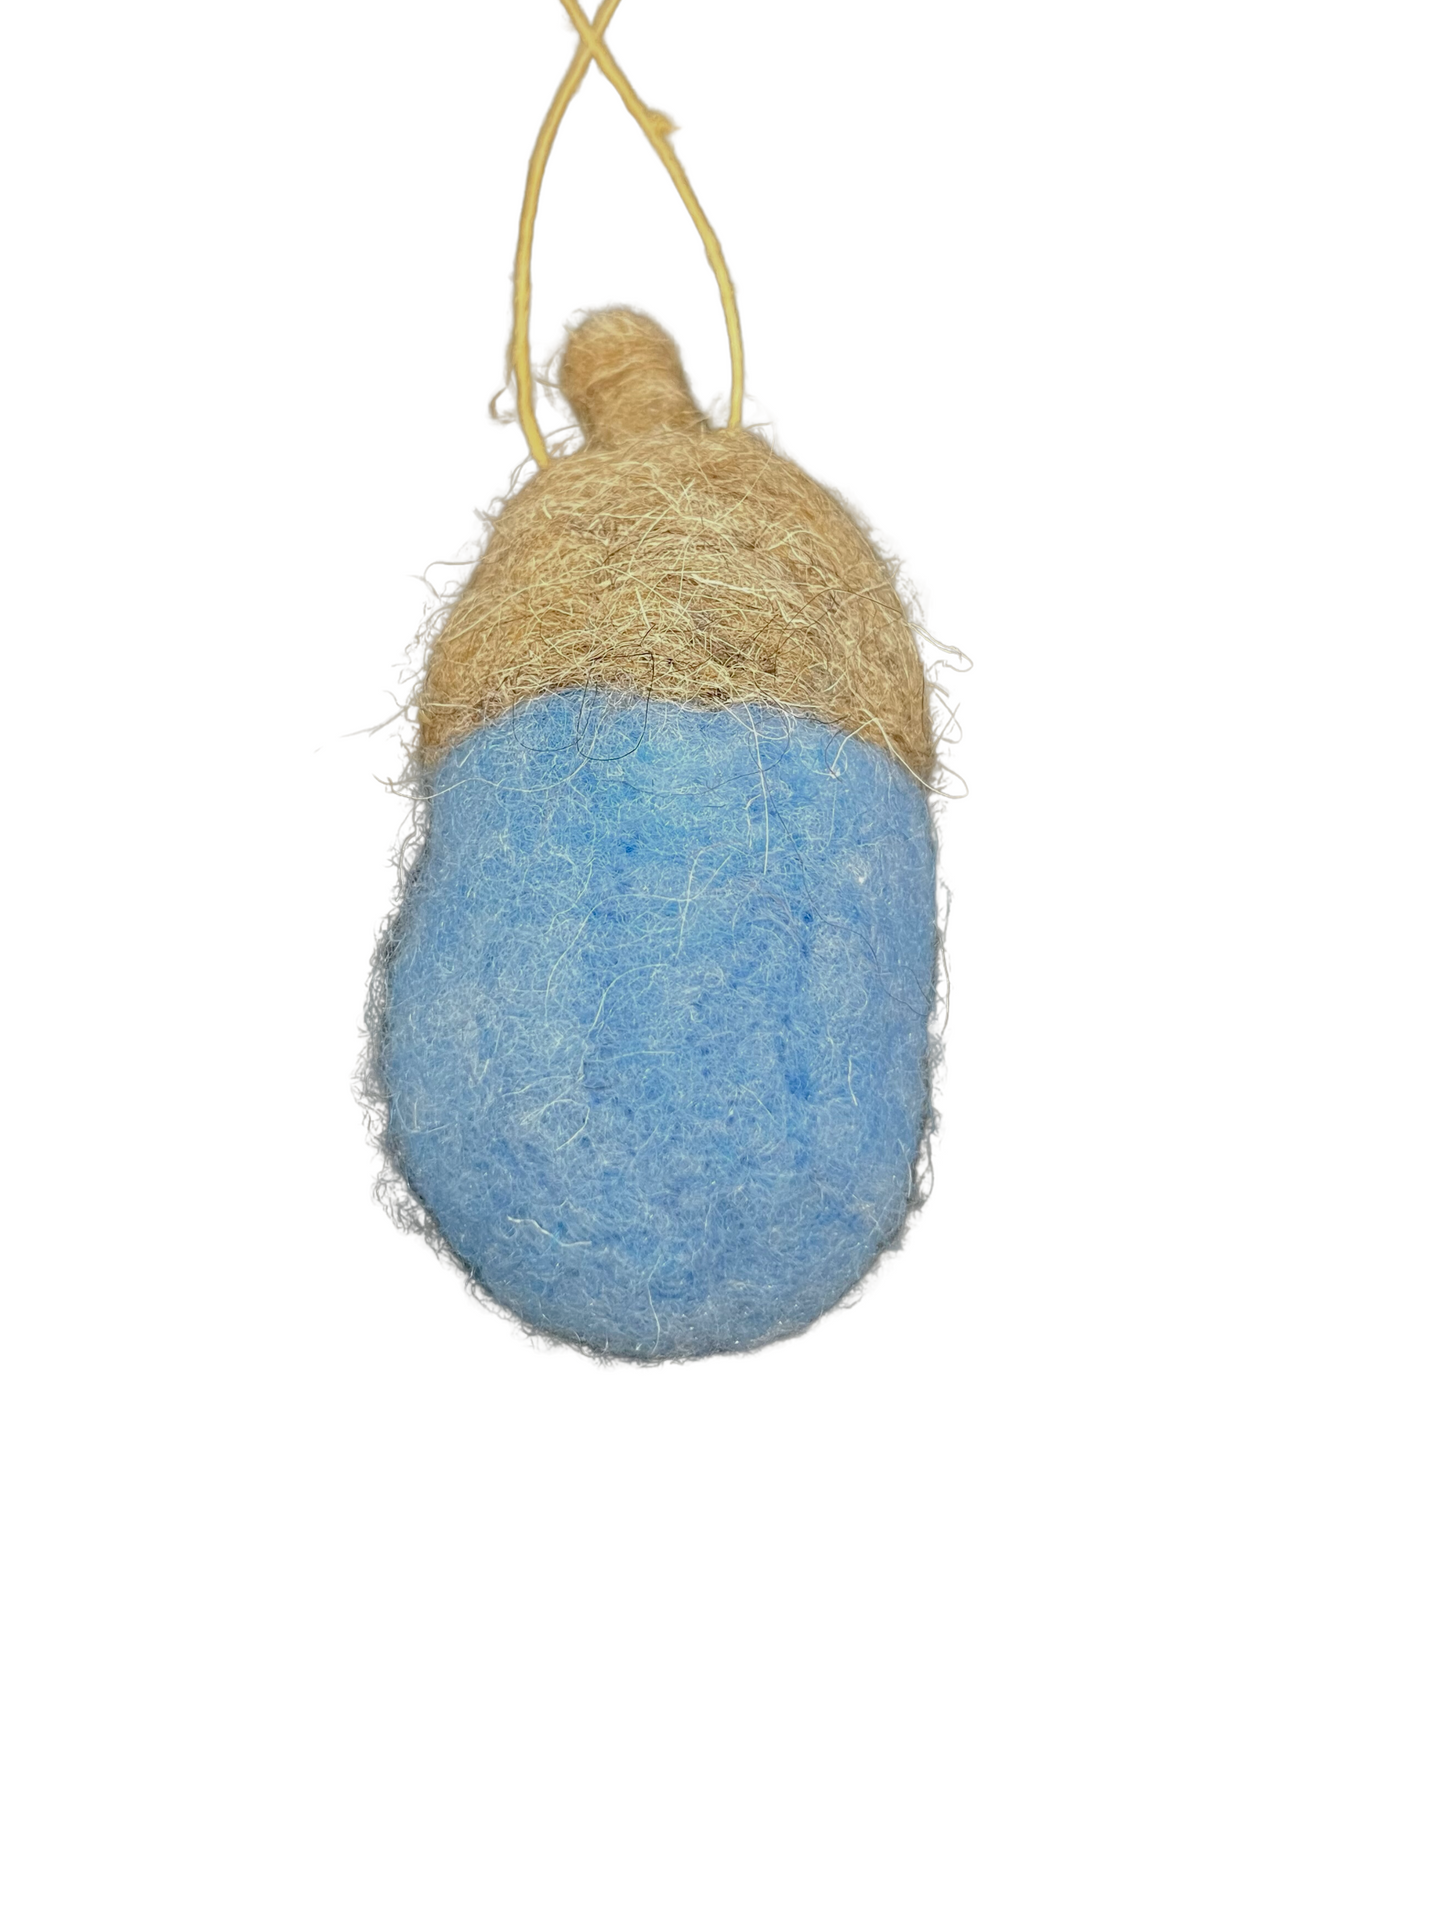 Small Wool Acorn Ornament